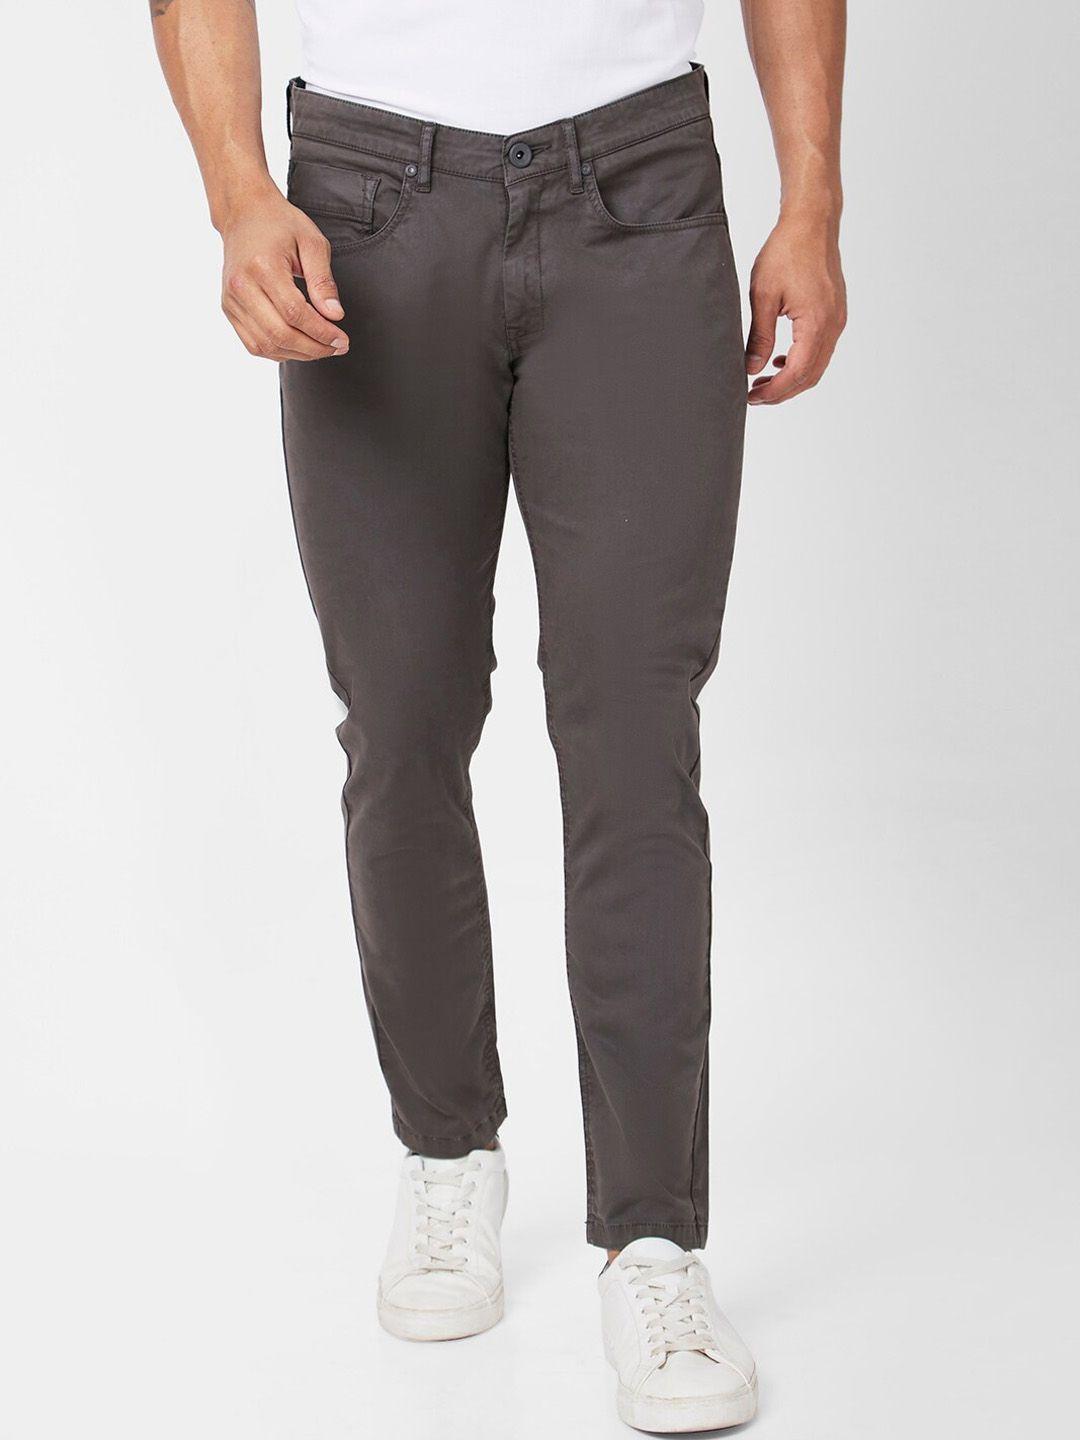 spykar-men-slim-fit-mid-rise-cotton-trousers